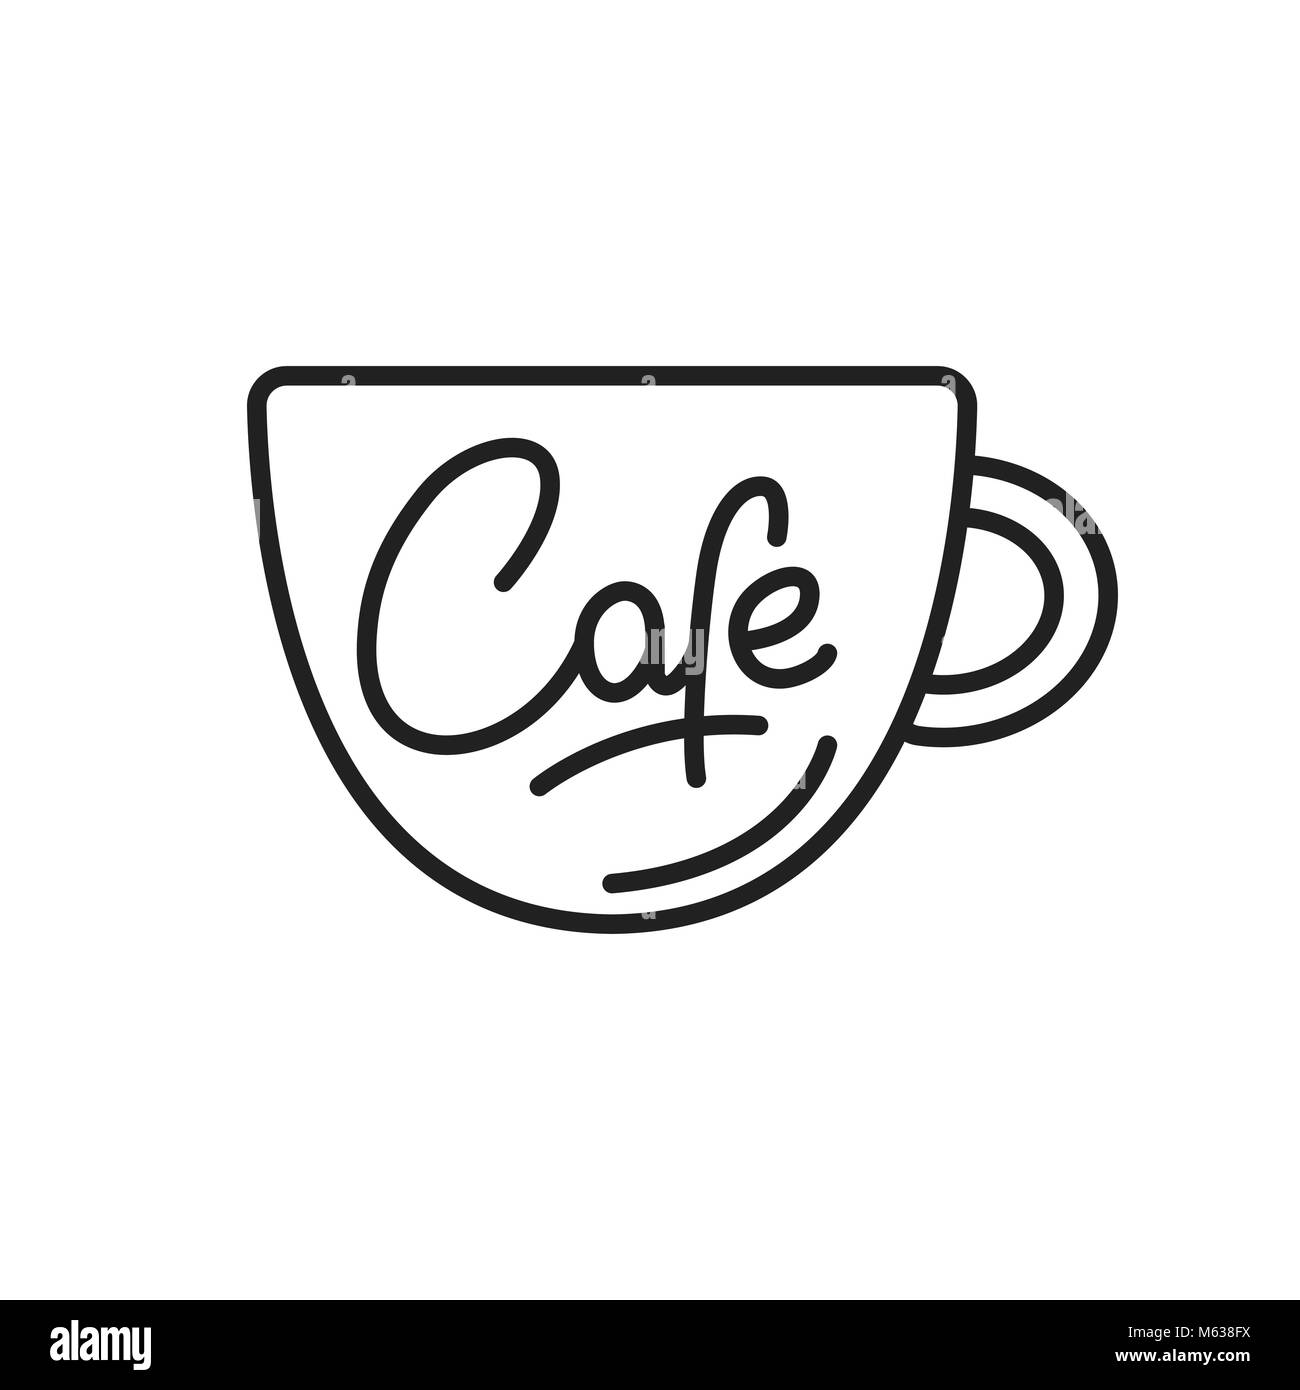 Cafe. Cafe lettering illustration. Cafe label badge emblem Stock Vector